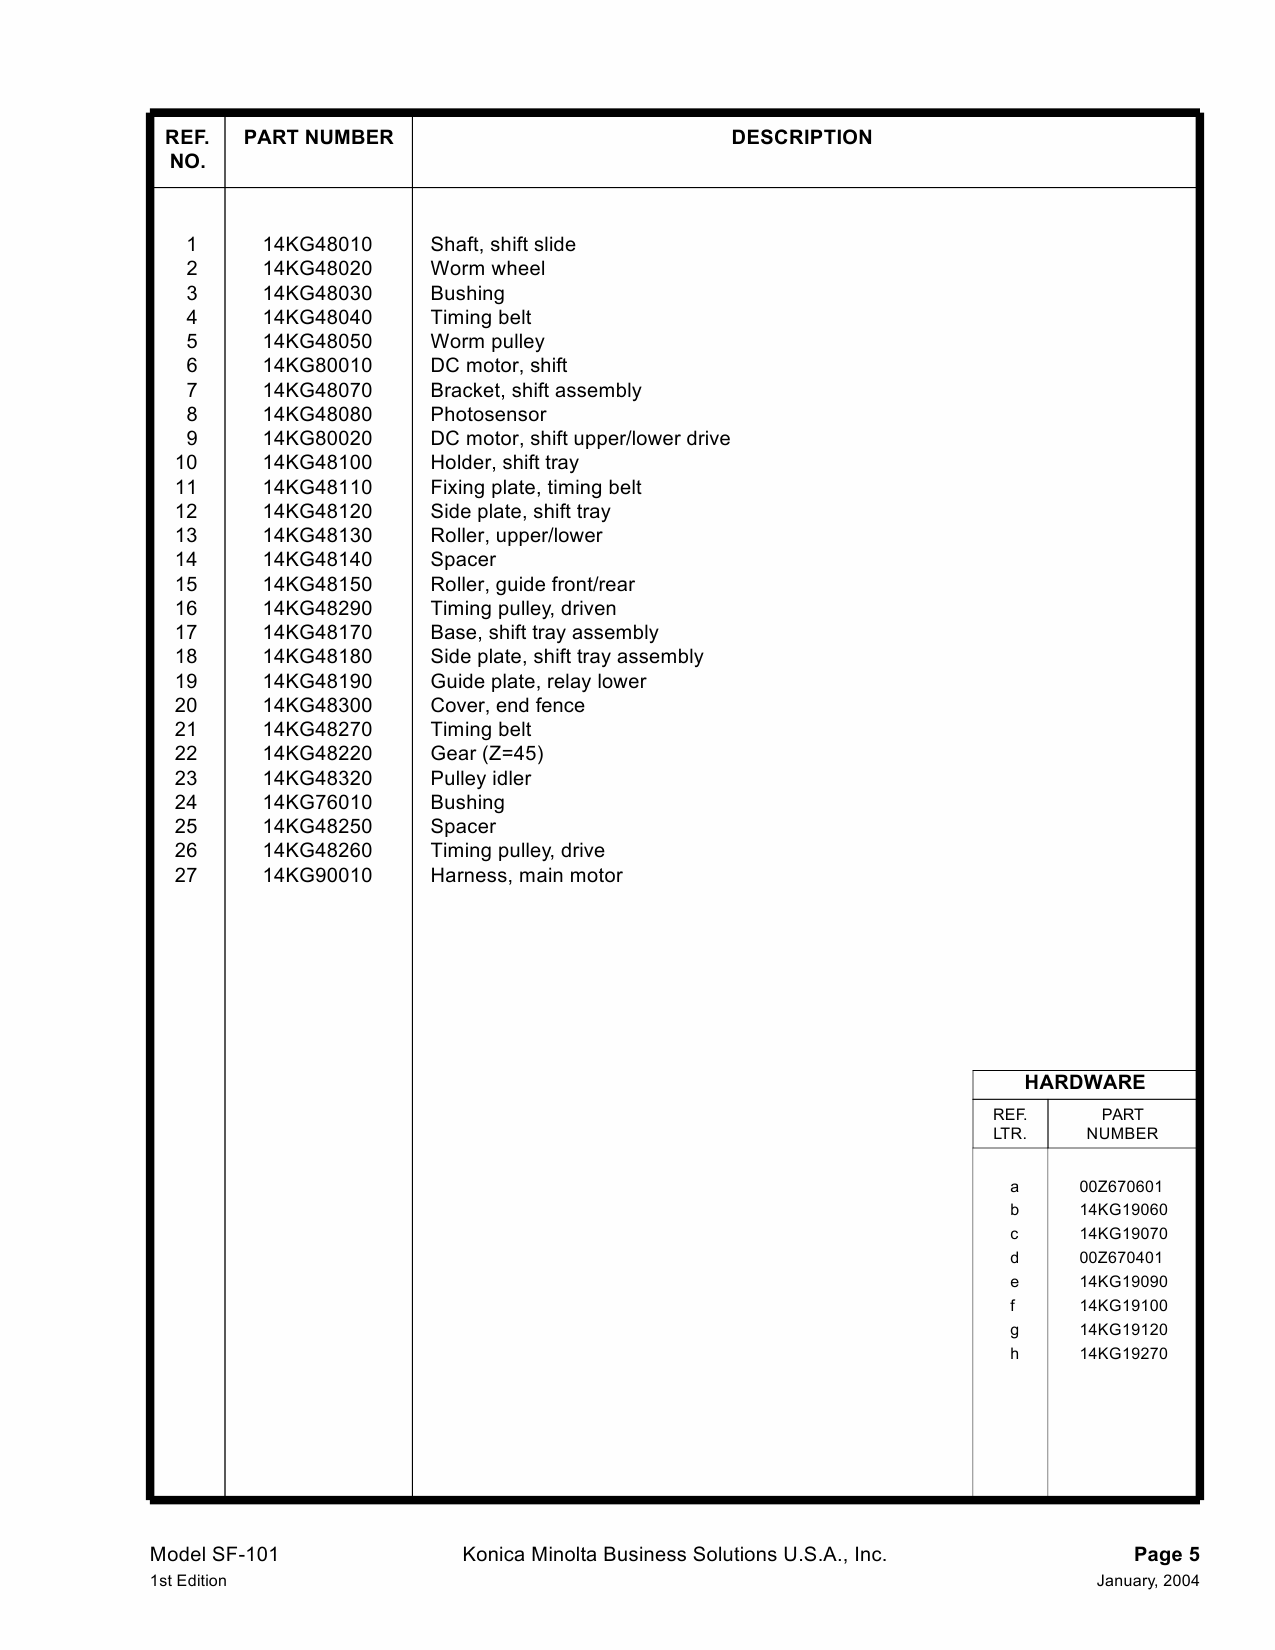 Konica-Minolta Options SF-101 Parts Manual-4